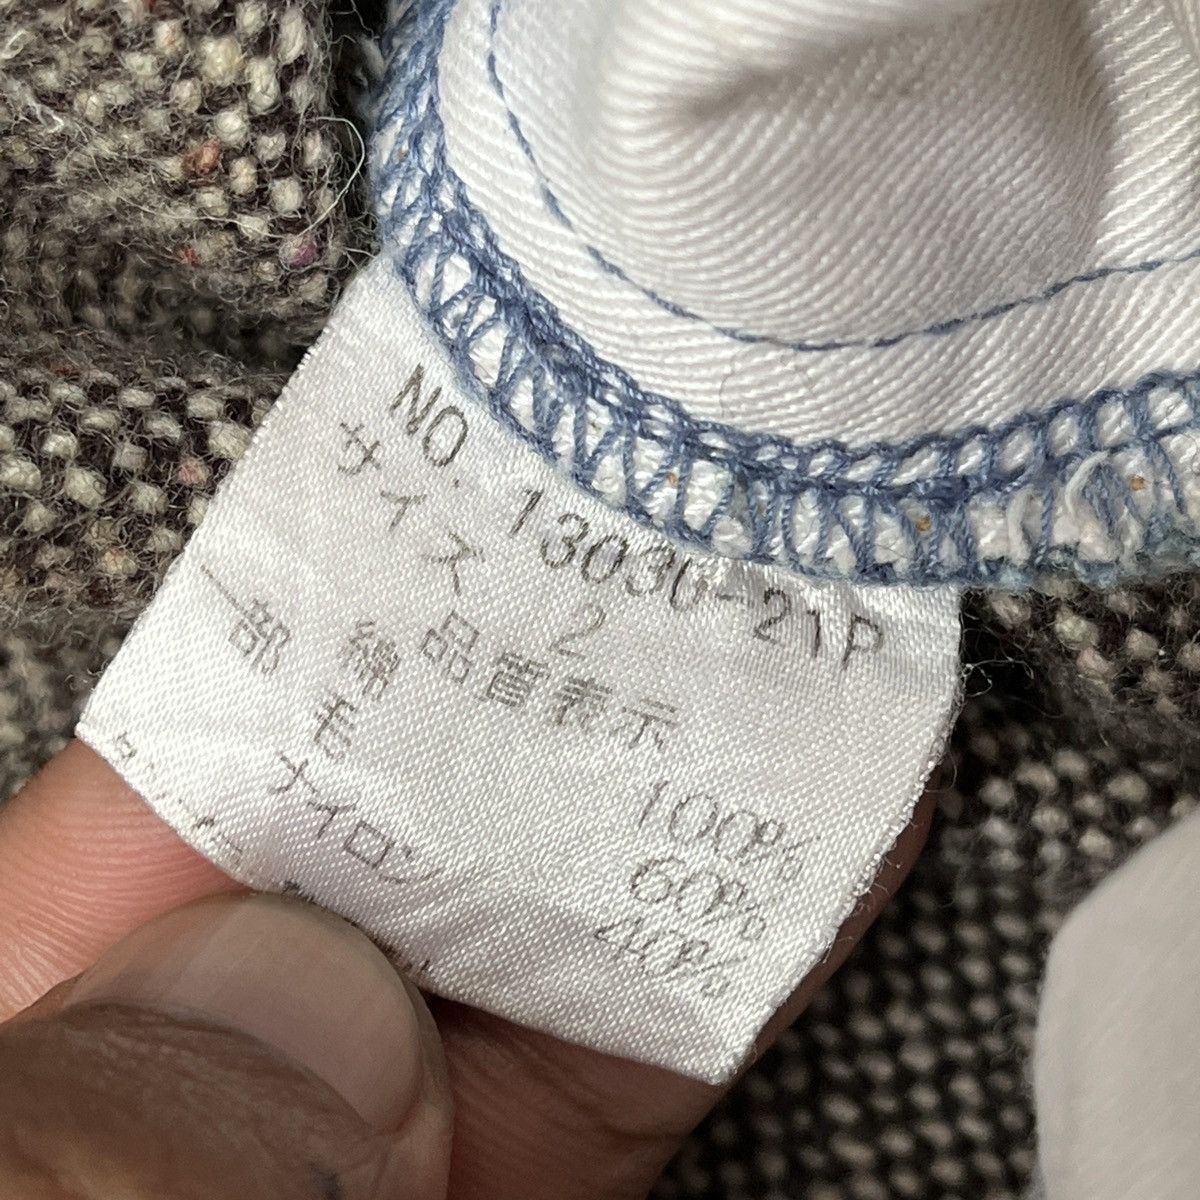 Japanese Brand - Osmosis Loaf Denim Jeans 3 Quarter Japan - 11